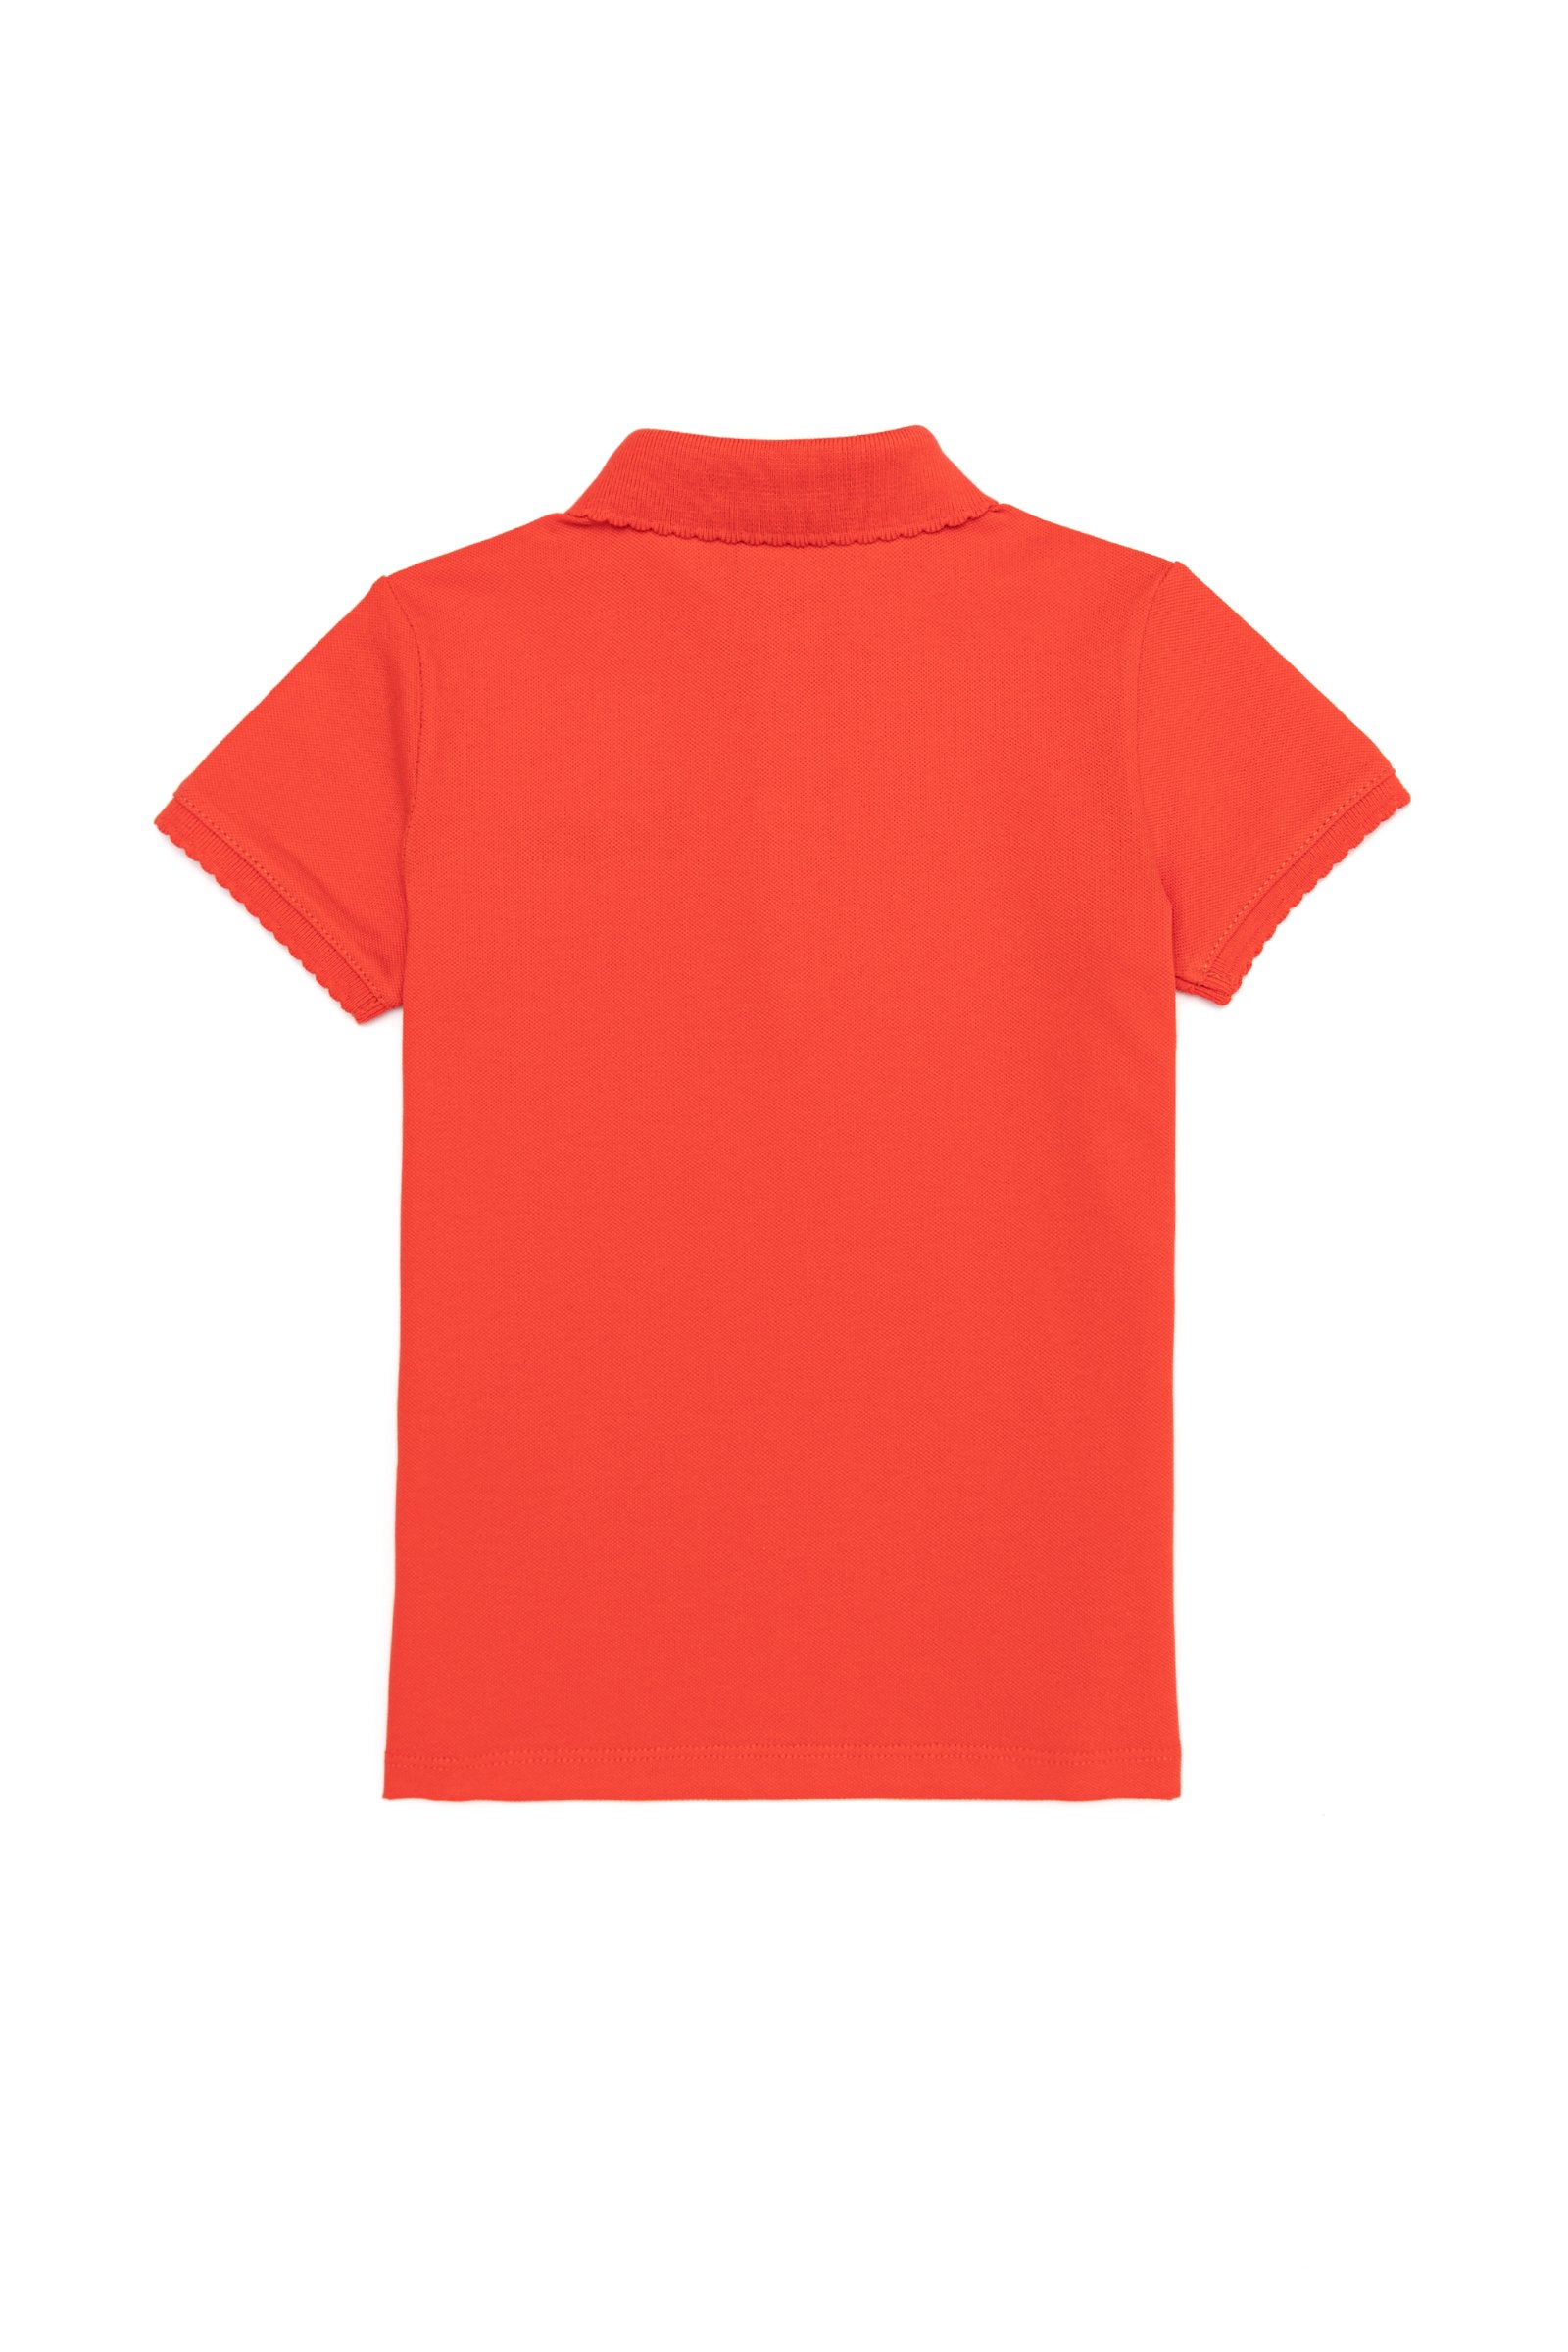 تی شرت یقه پولو قرمز  استاندارد فیت  دخترانه یو اس پولو